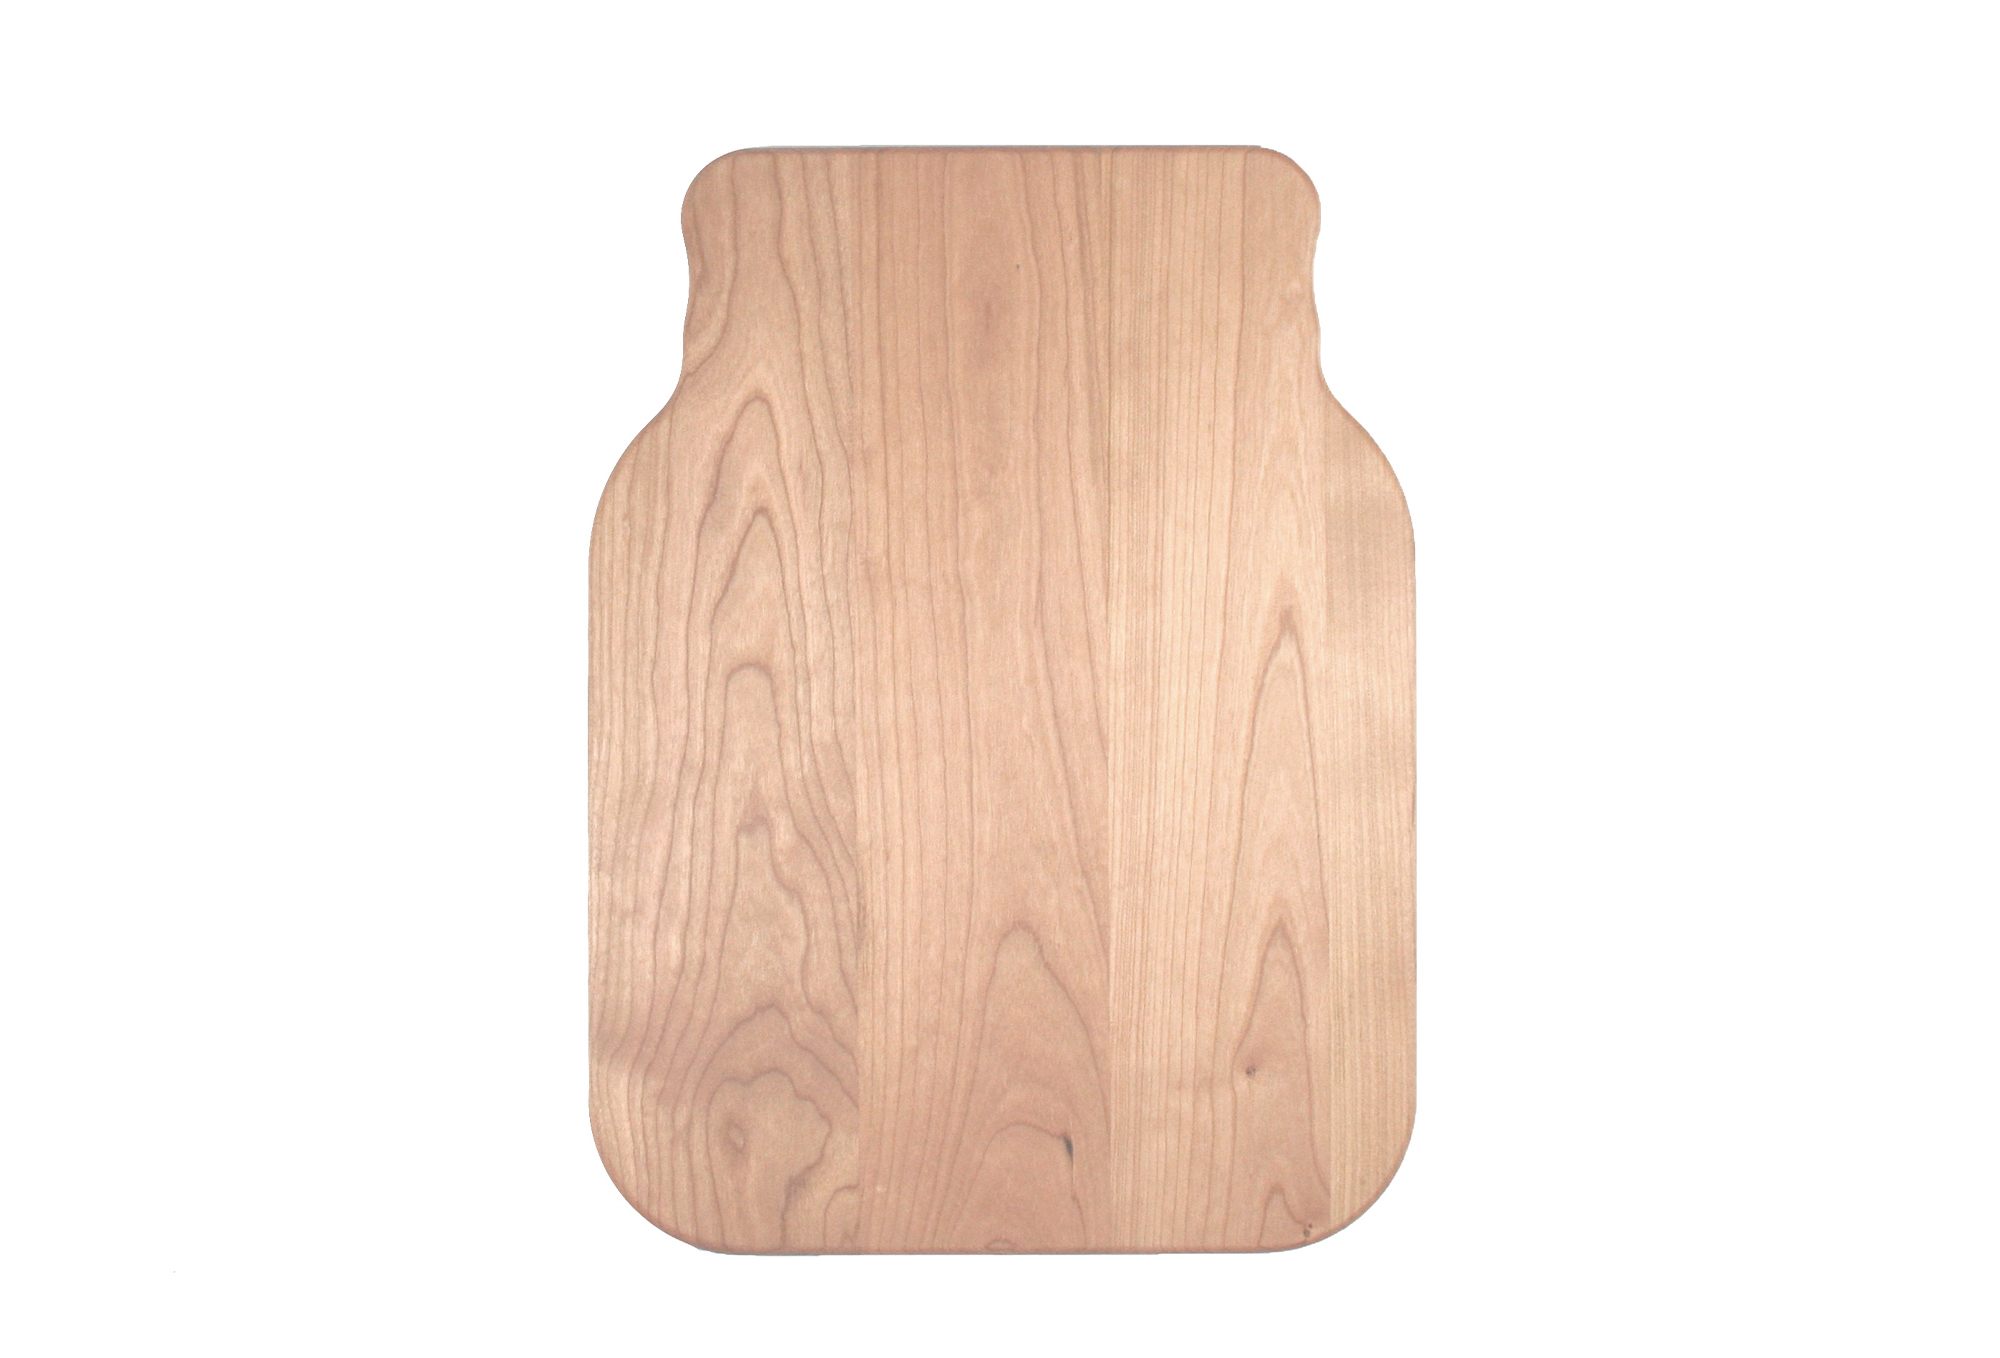 Novelty mason jar shaped maple cutting board